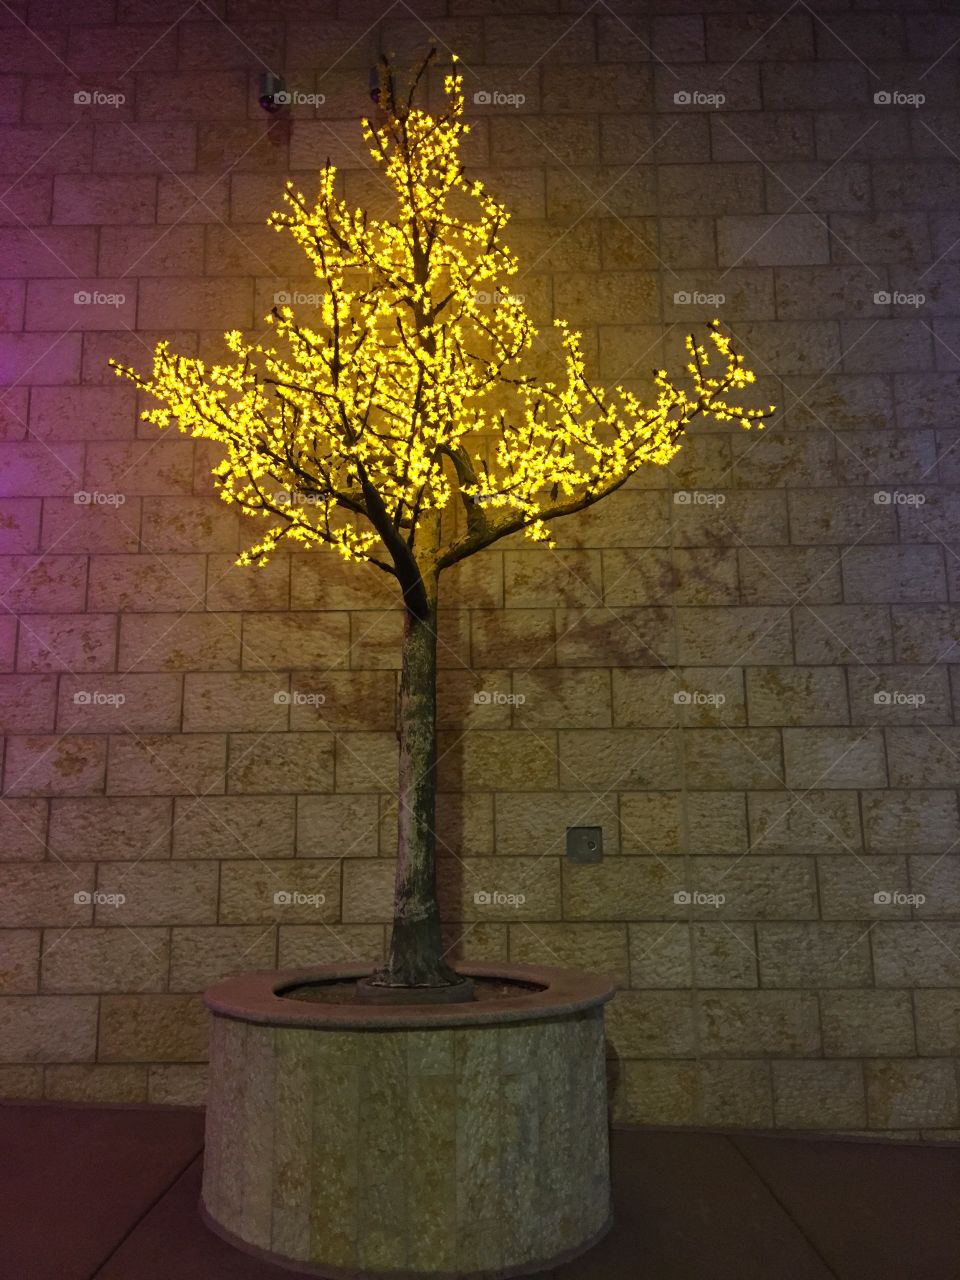 Yellow
Tree
Light
Night